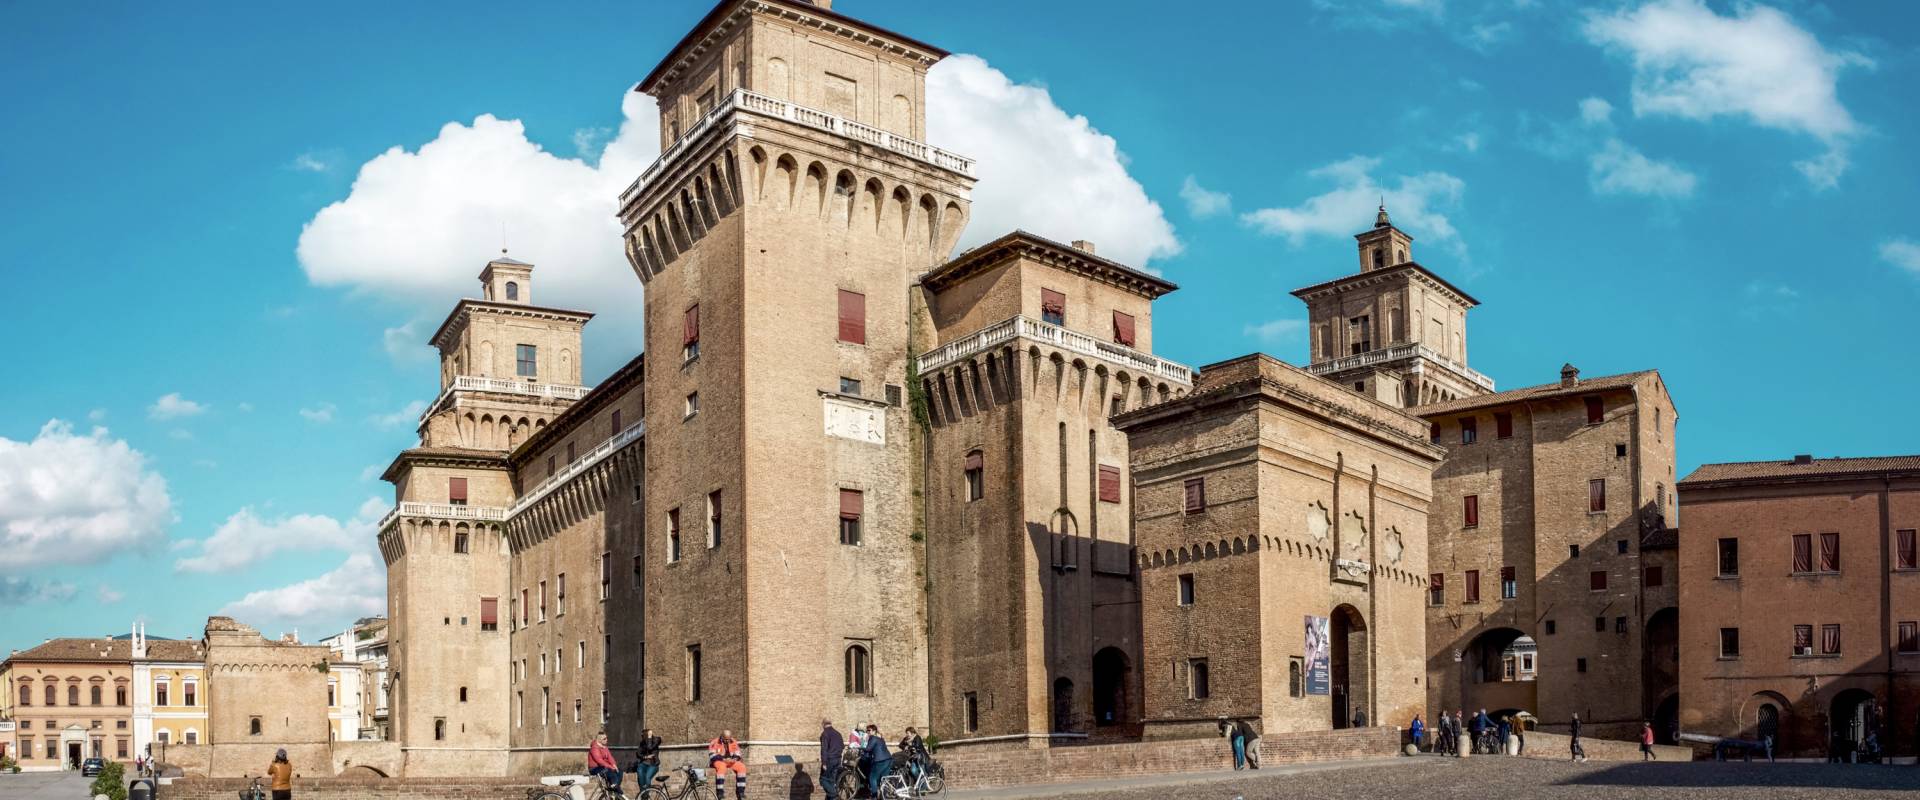 Ferrara -- Castello Estense photo by Vanni Lazzari